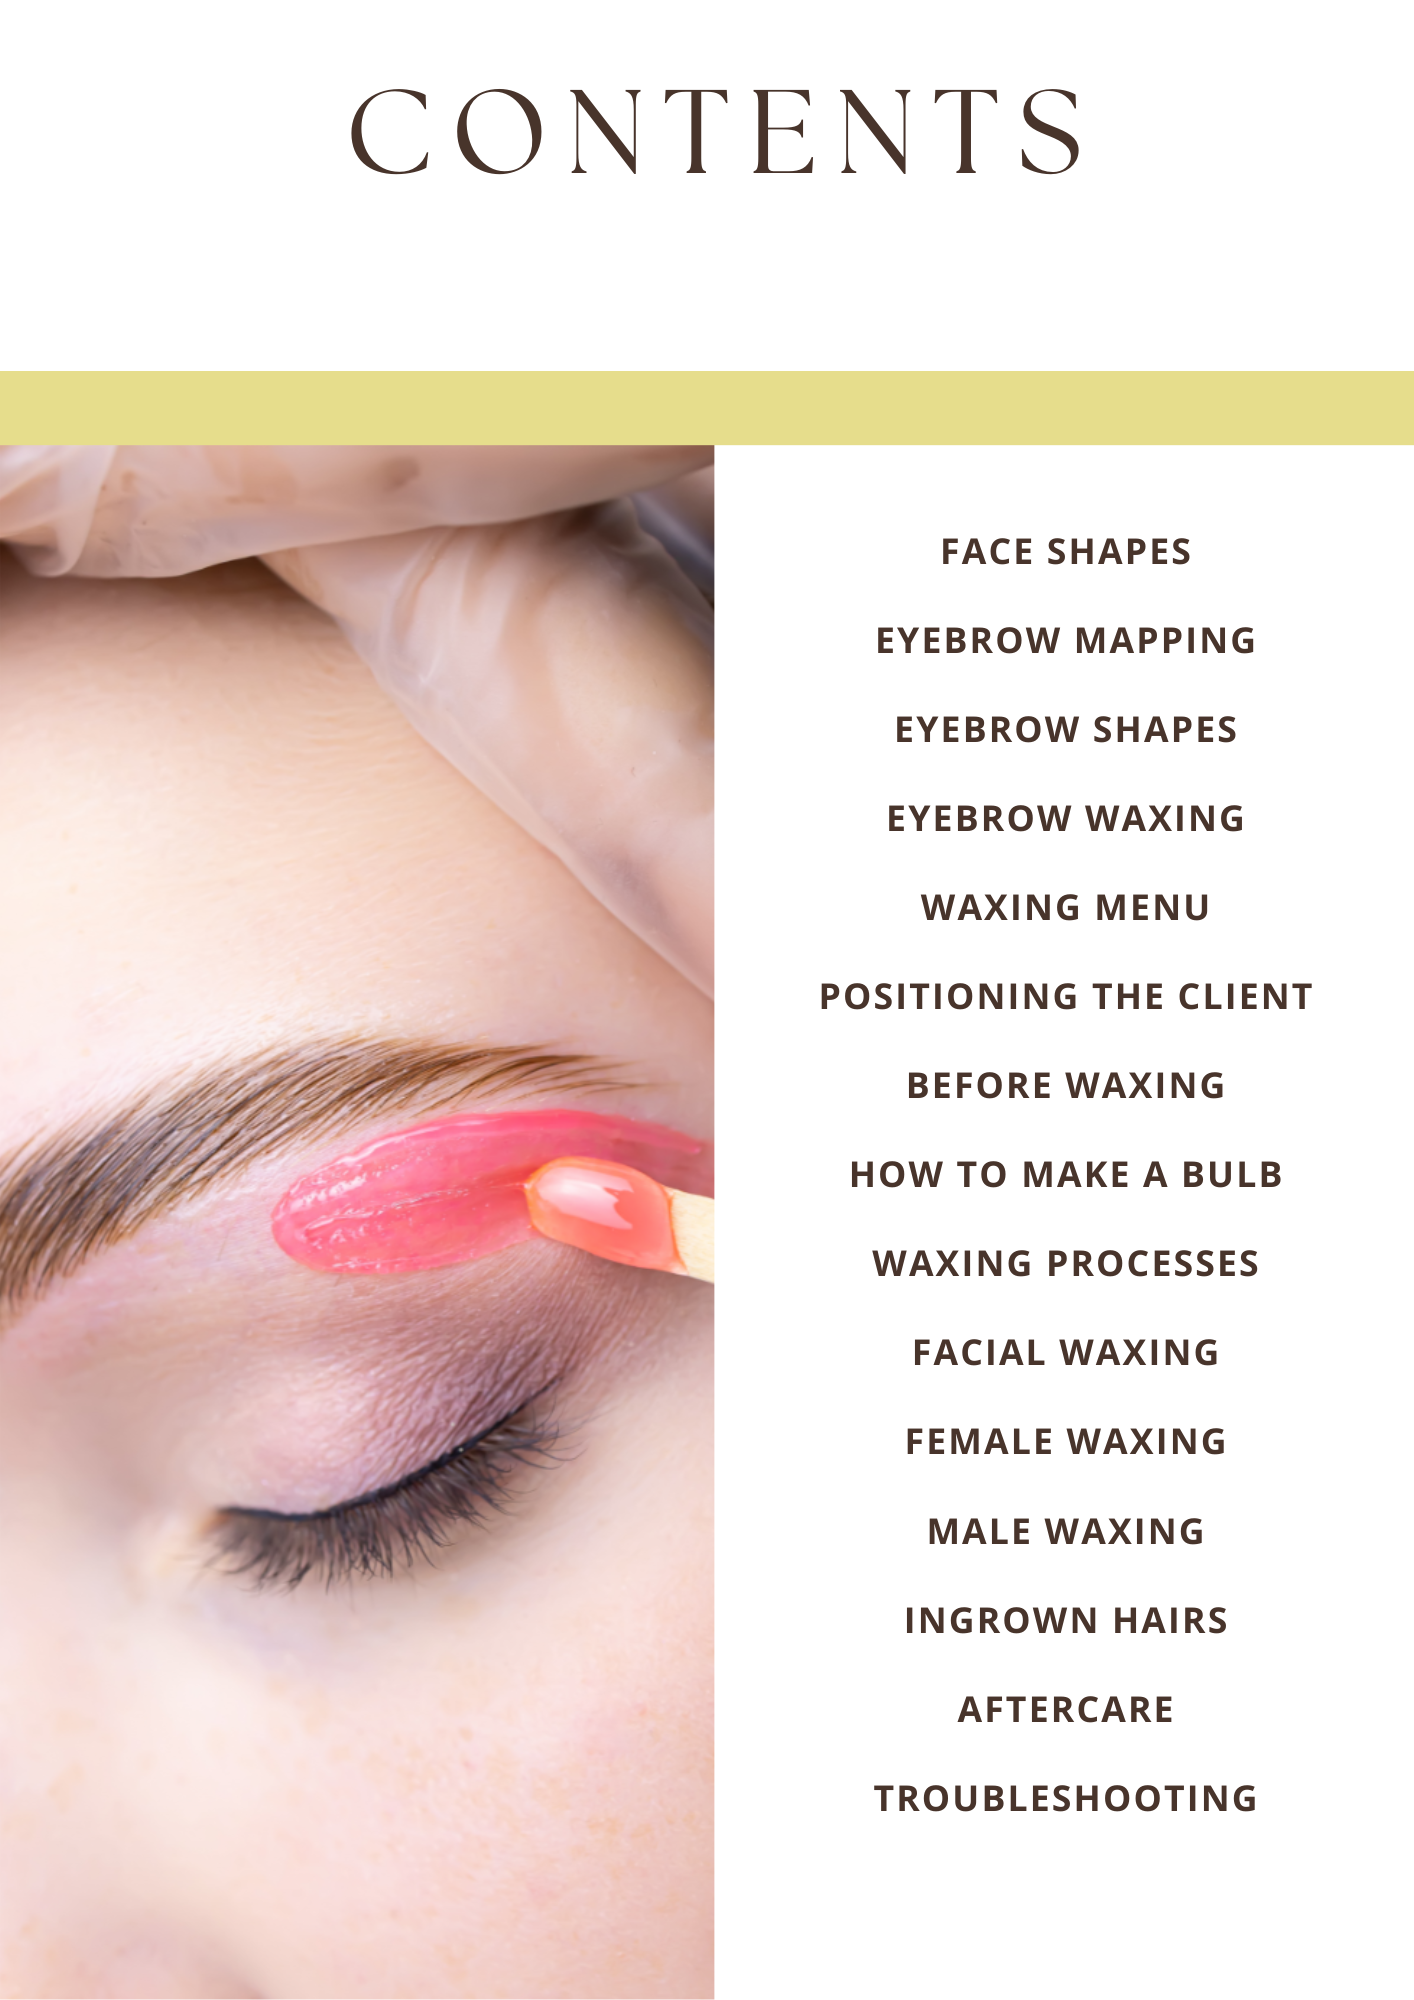 Waxing Face & Body Training Manual